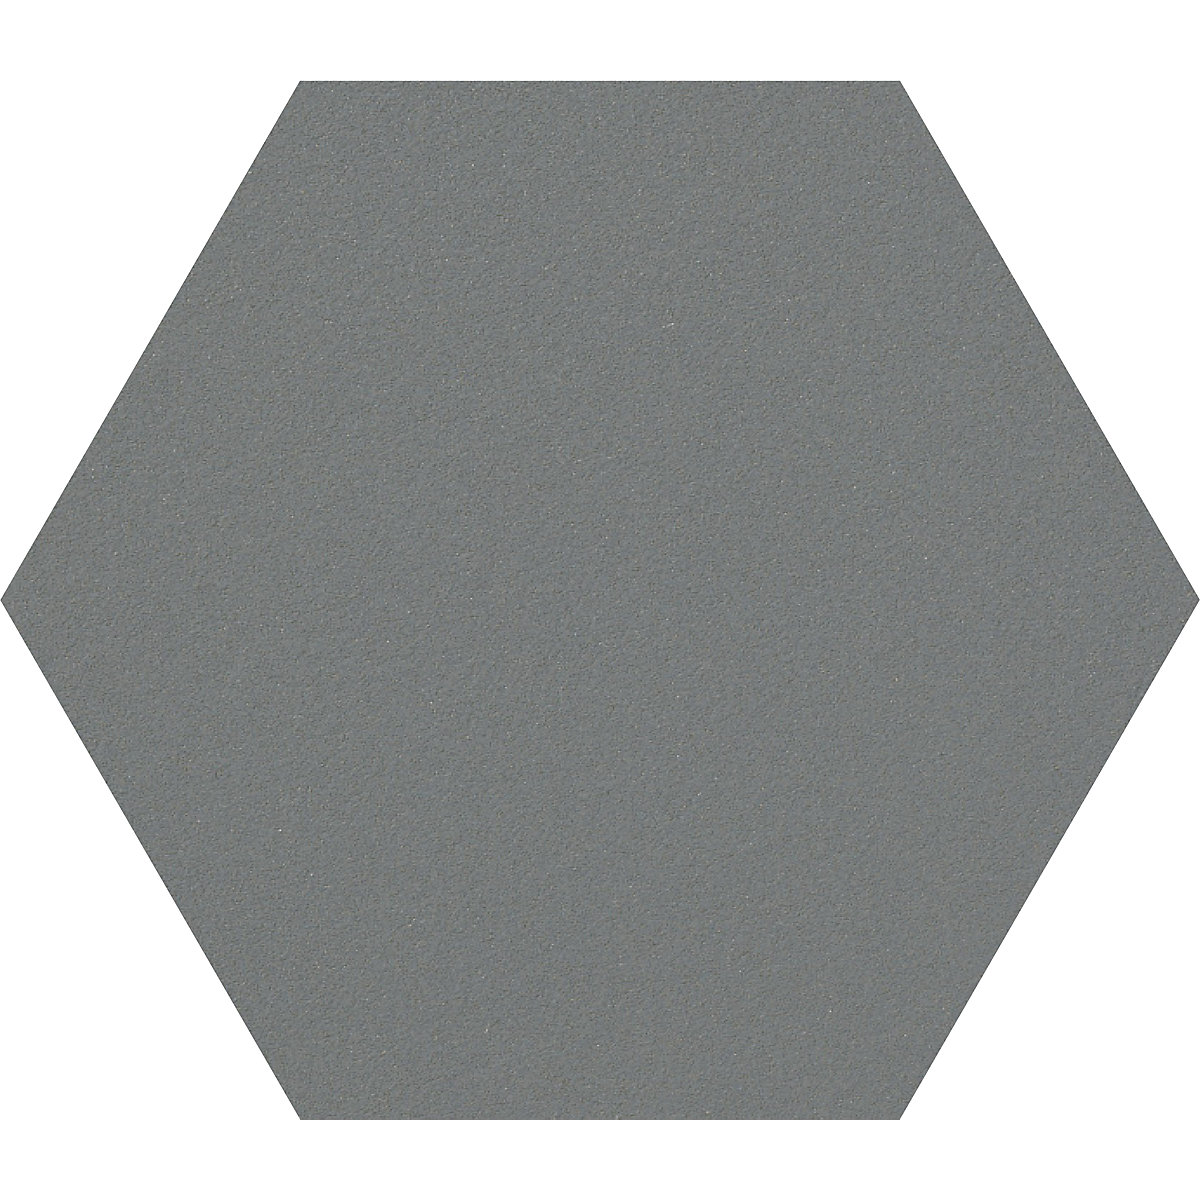 Quadro de pinos com design hexagonal – Chameleon, cortiça, LxA 600 x 600 mm, cinzento escuro-27